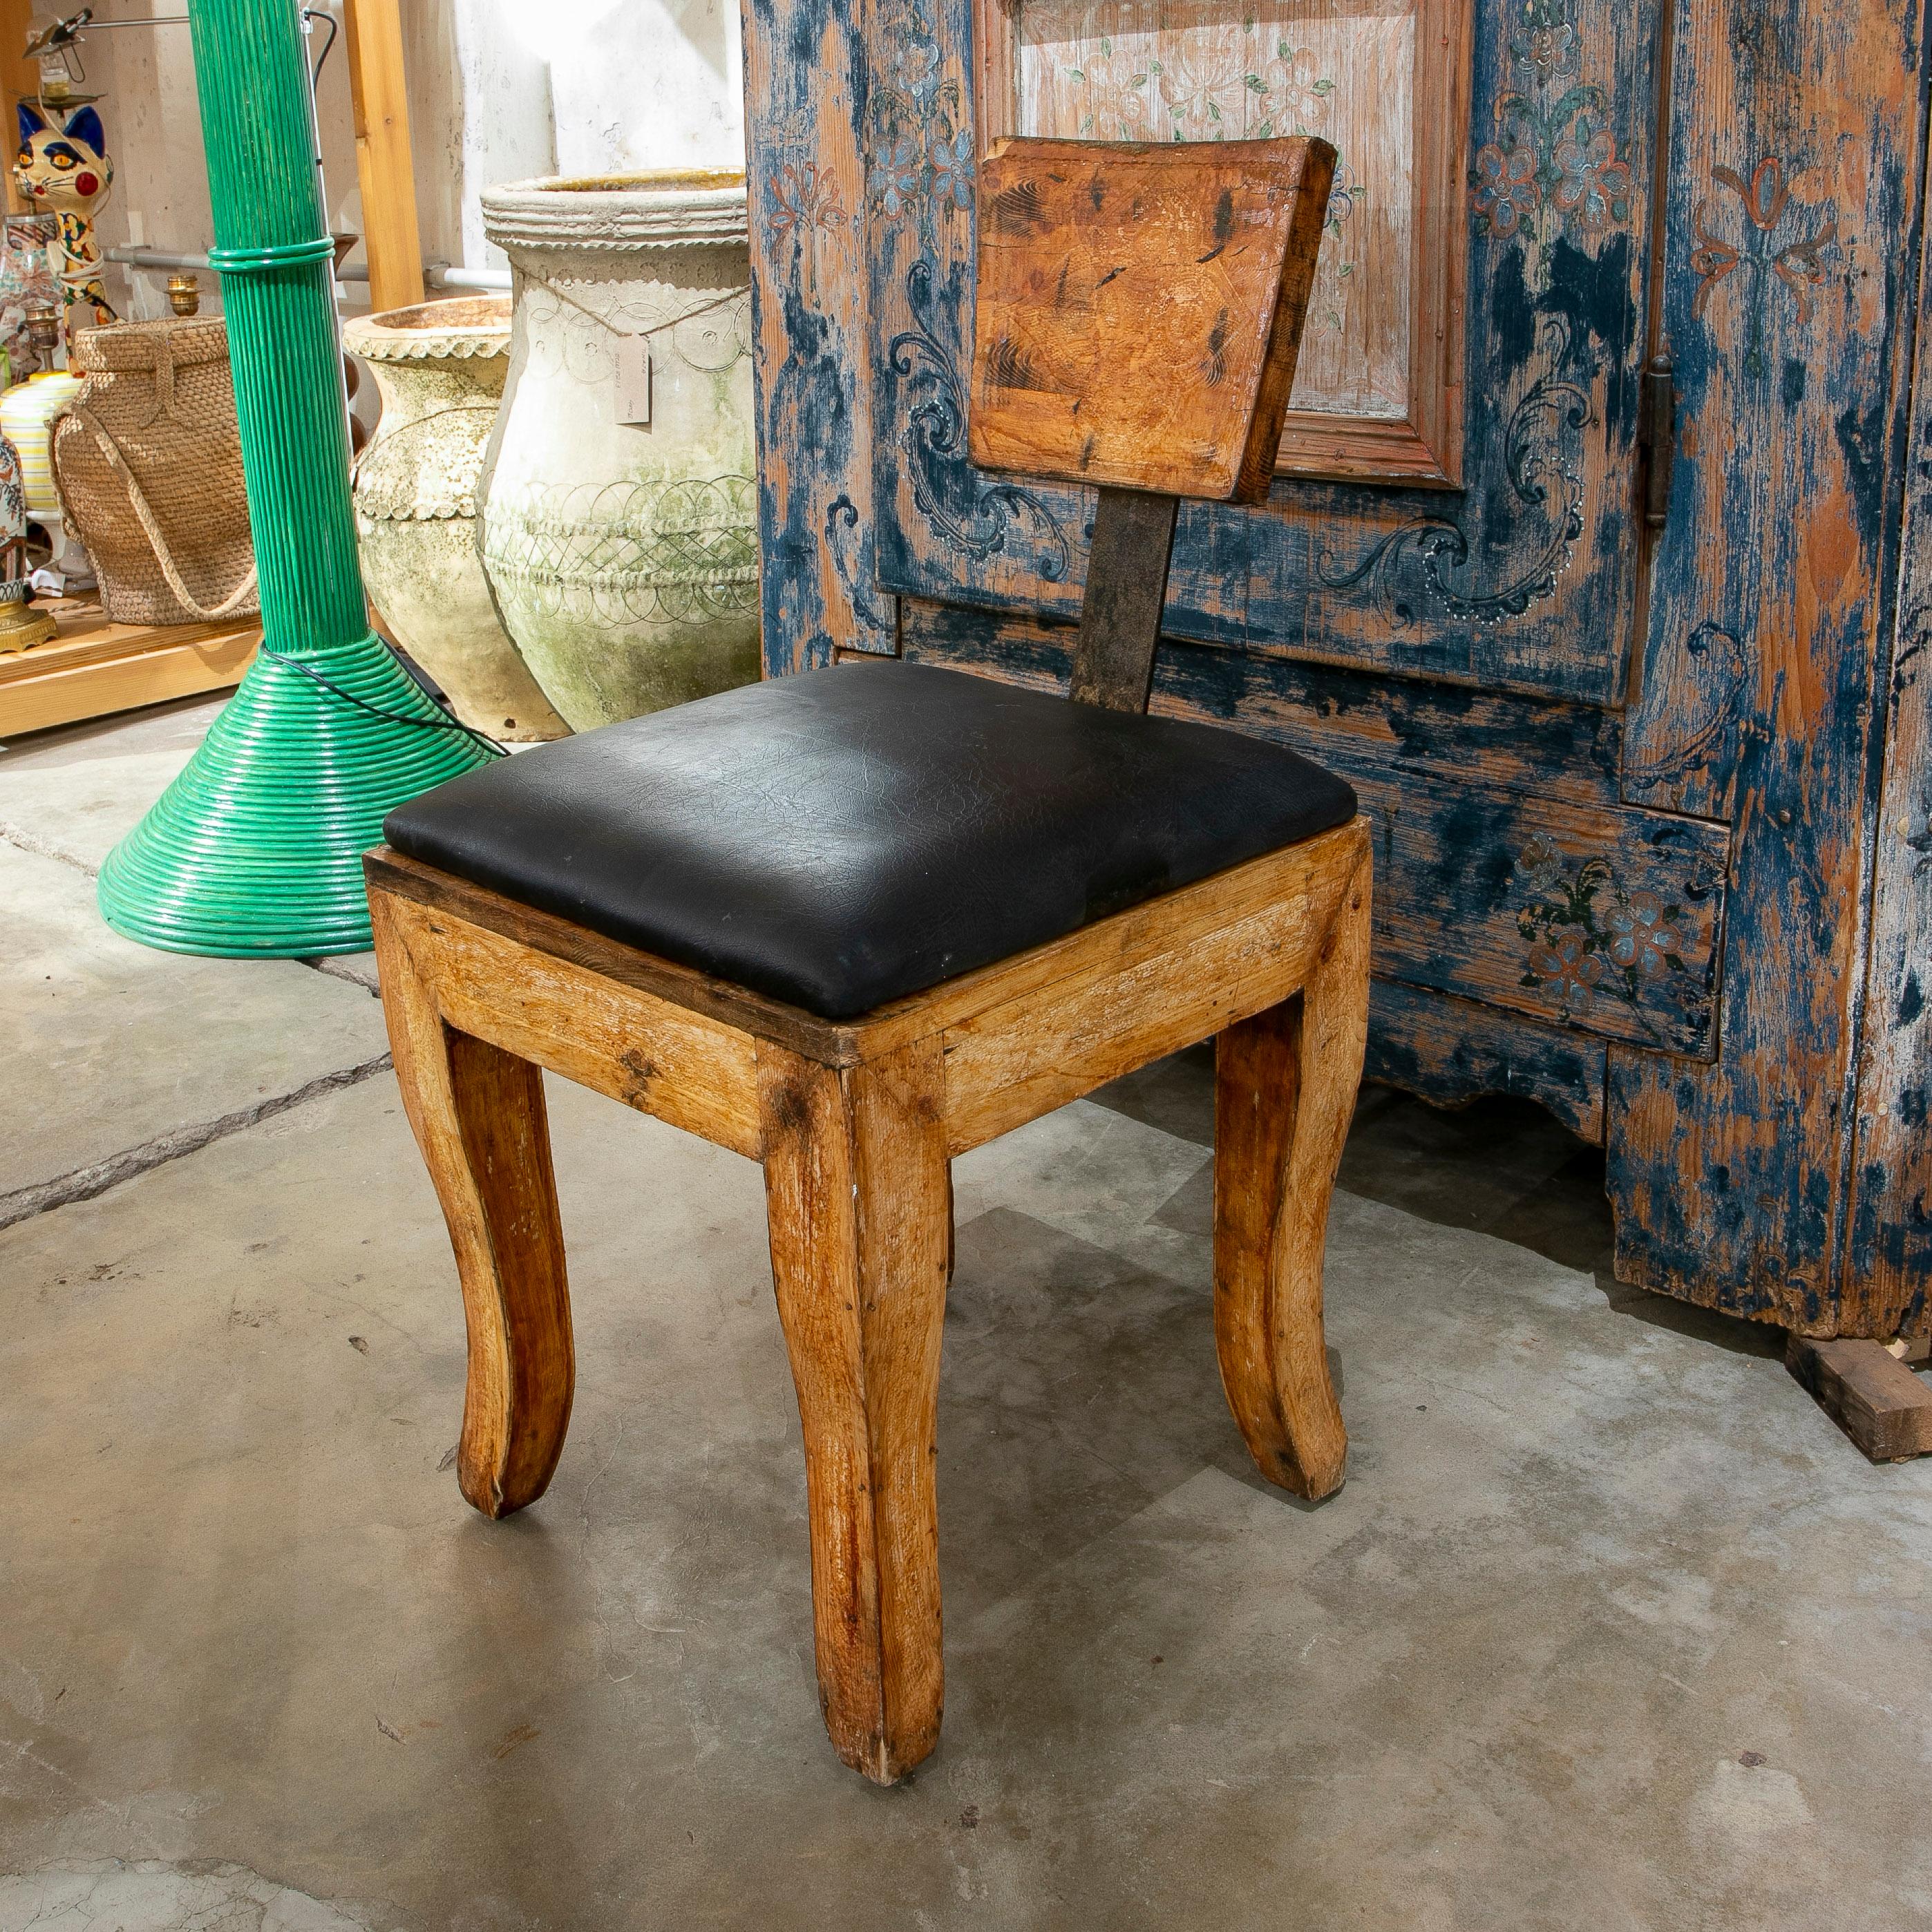 spanischer Designerstuhl aus Holz und Eisen aus den 1970er Jahren mit einer unverhältnismäßig kleinen Rückenlehne und einem rauen, verwitterten Industriecharakter, der ihn auszeichnet.
 